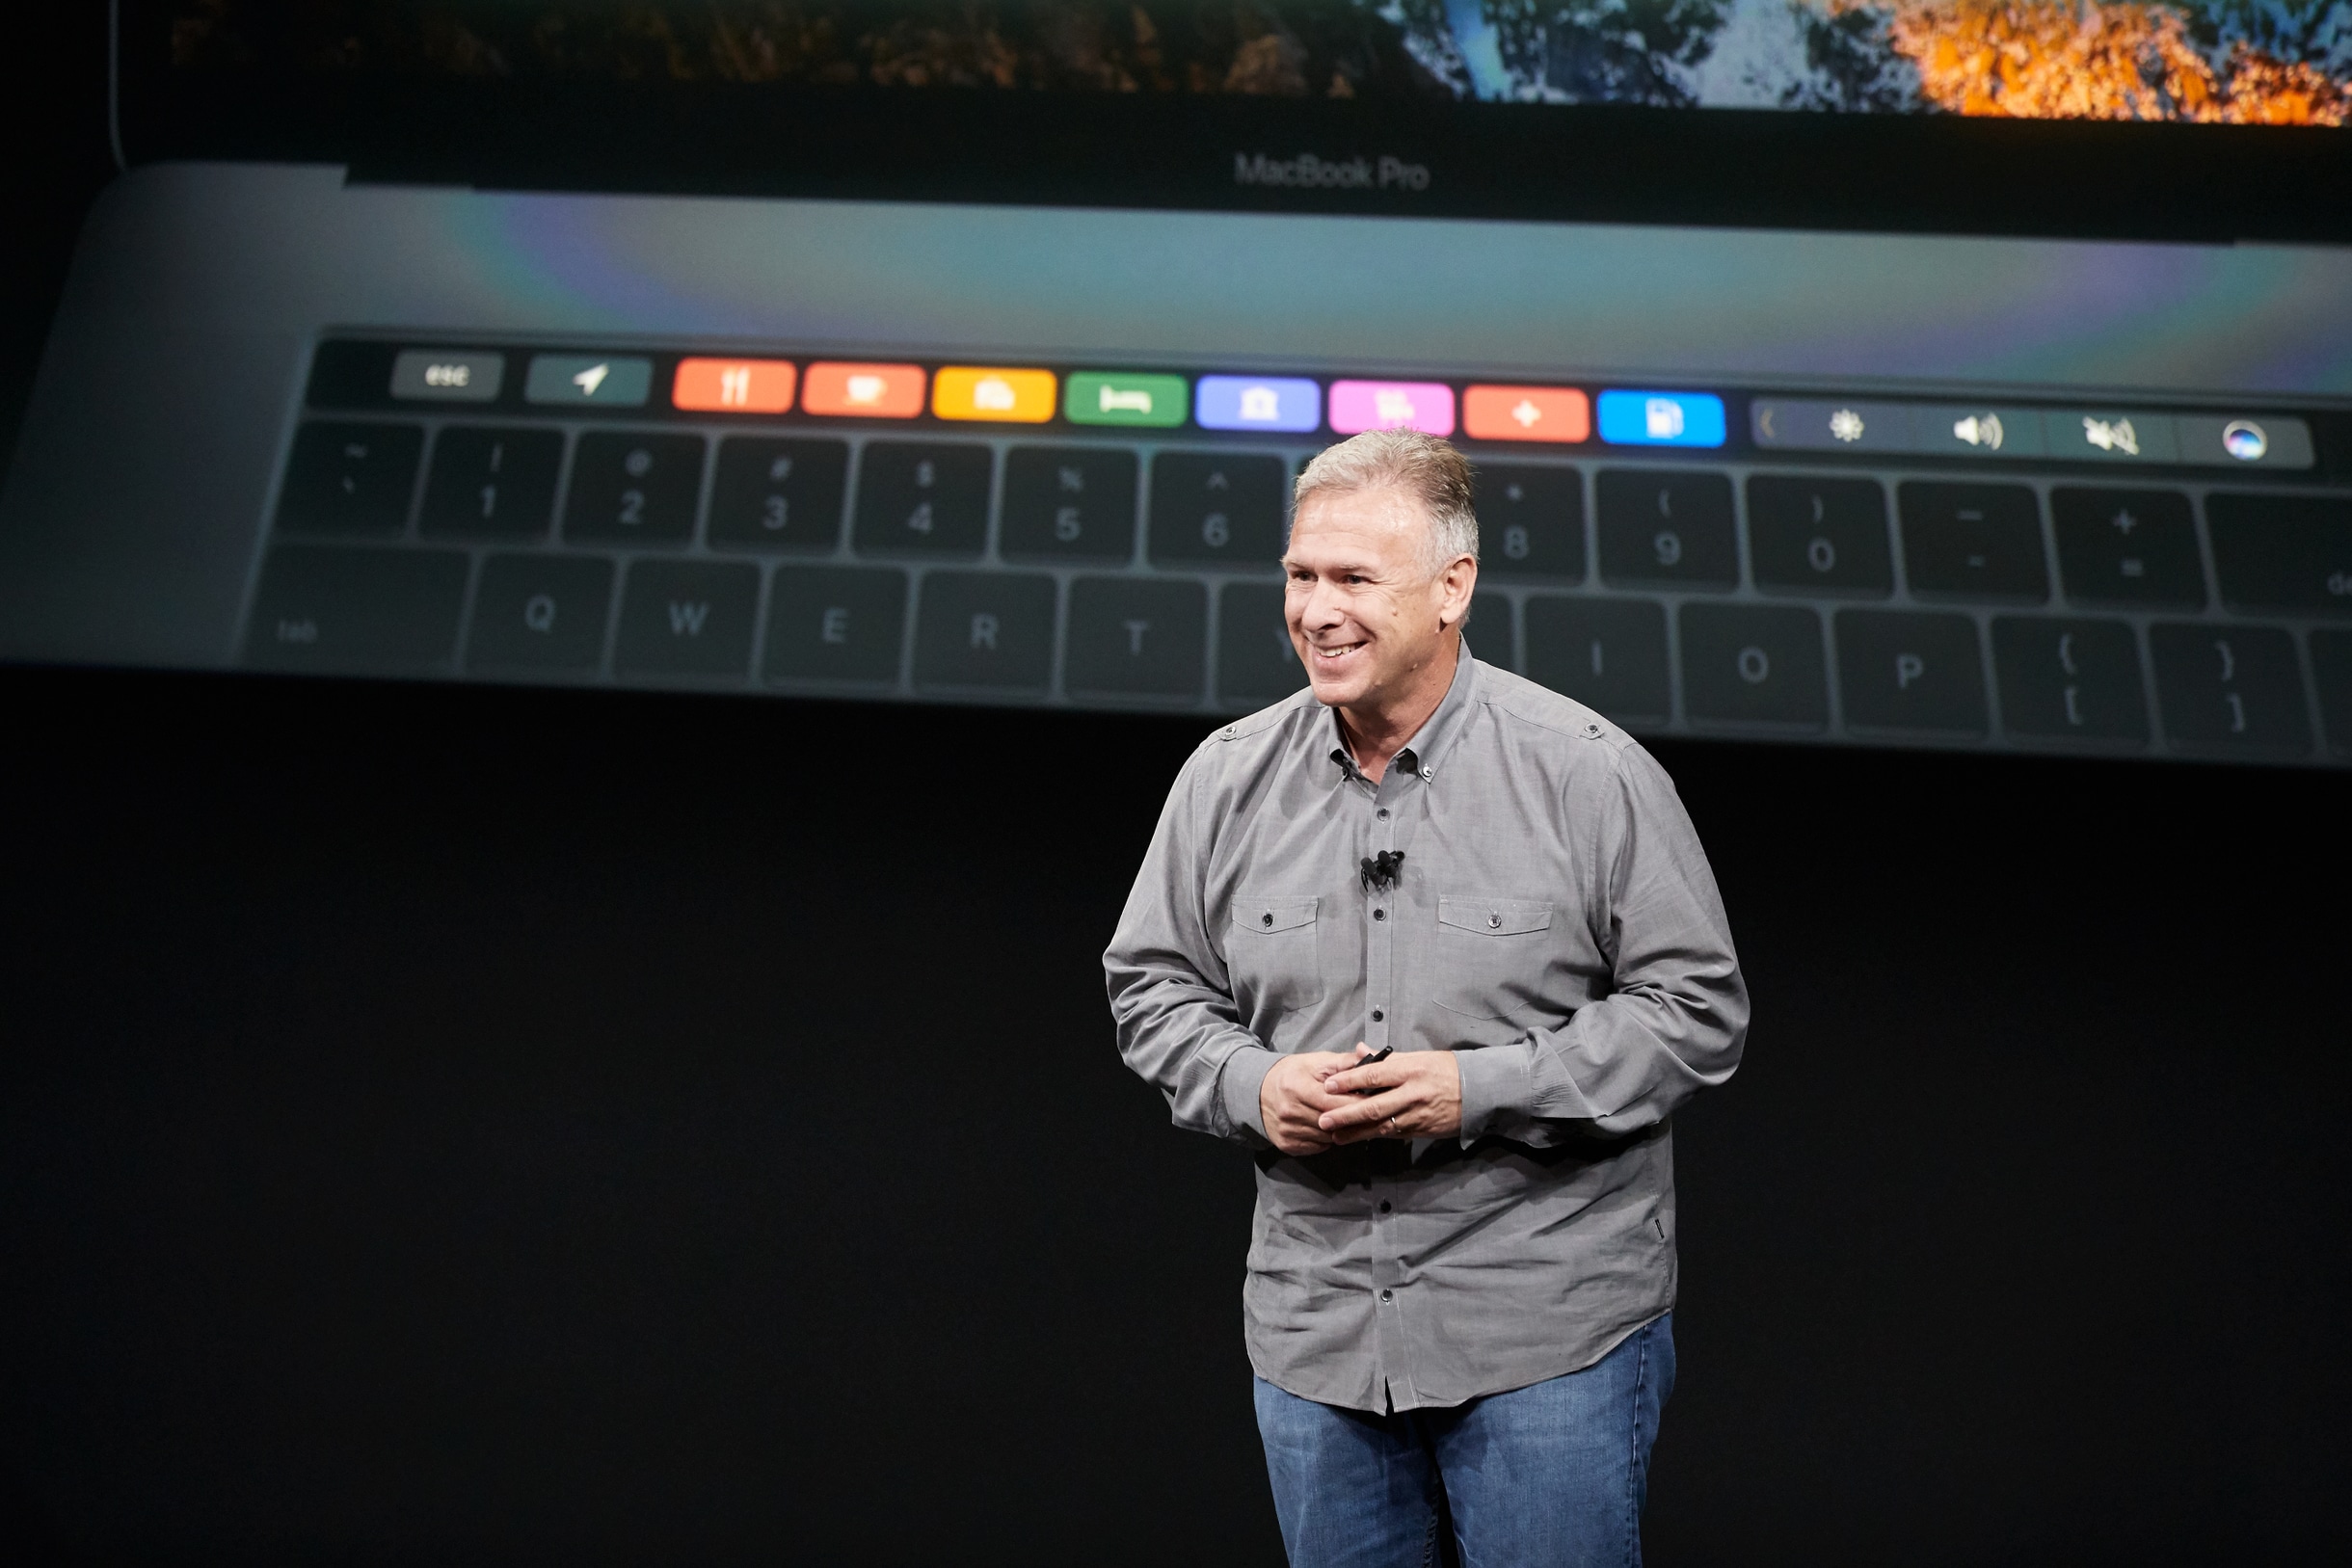 Suures intervjuus rääkis Phil Schiller uue MacBook Pro poleemikast